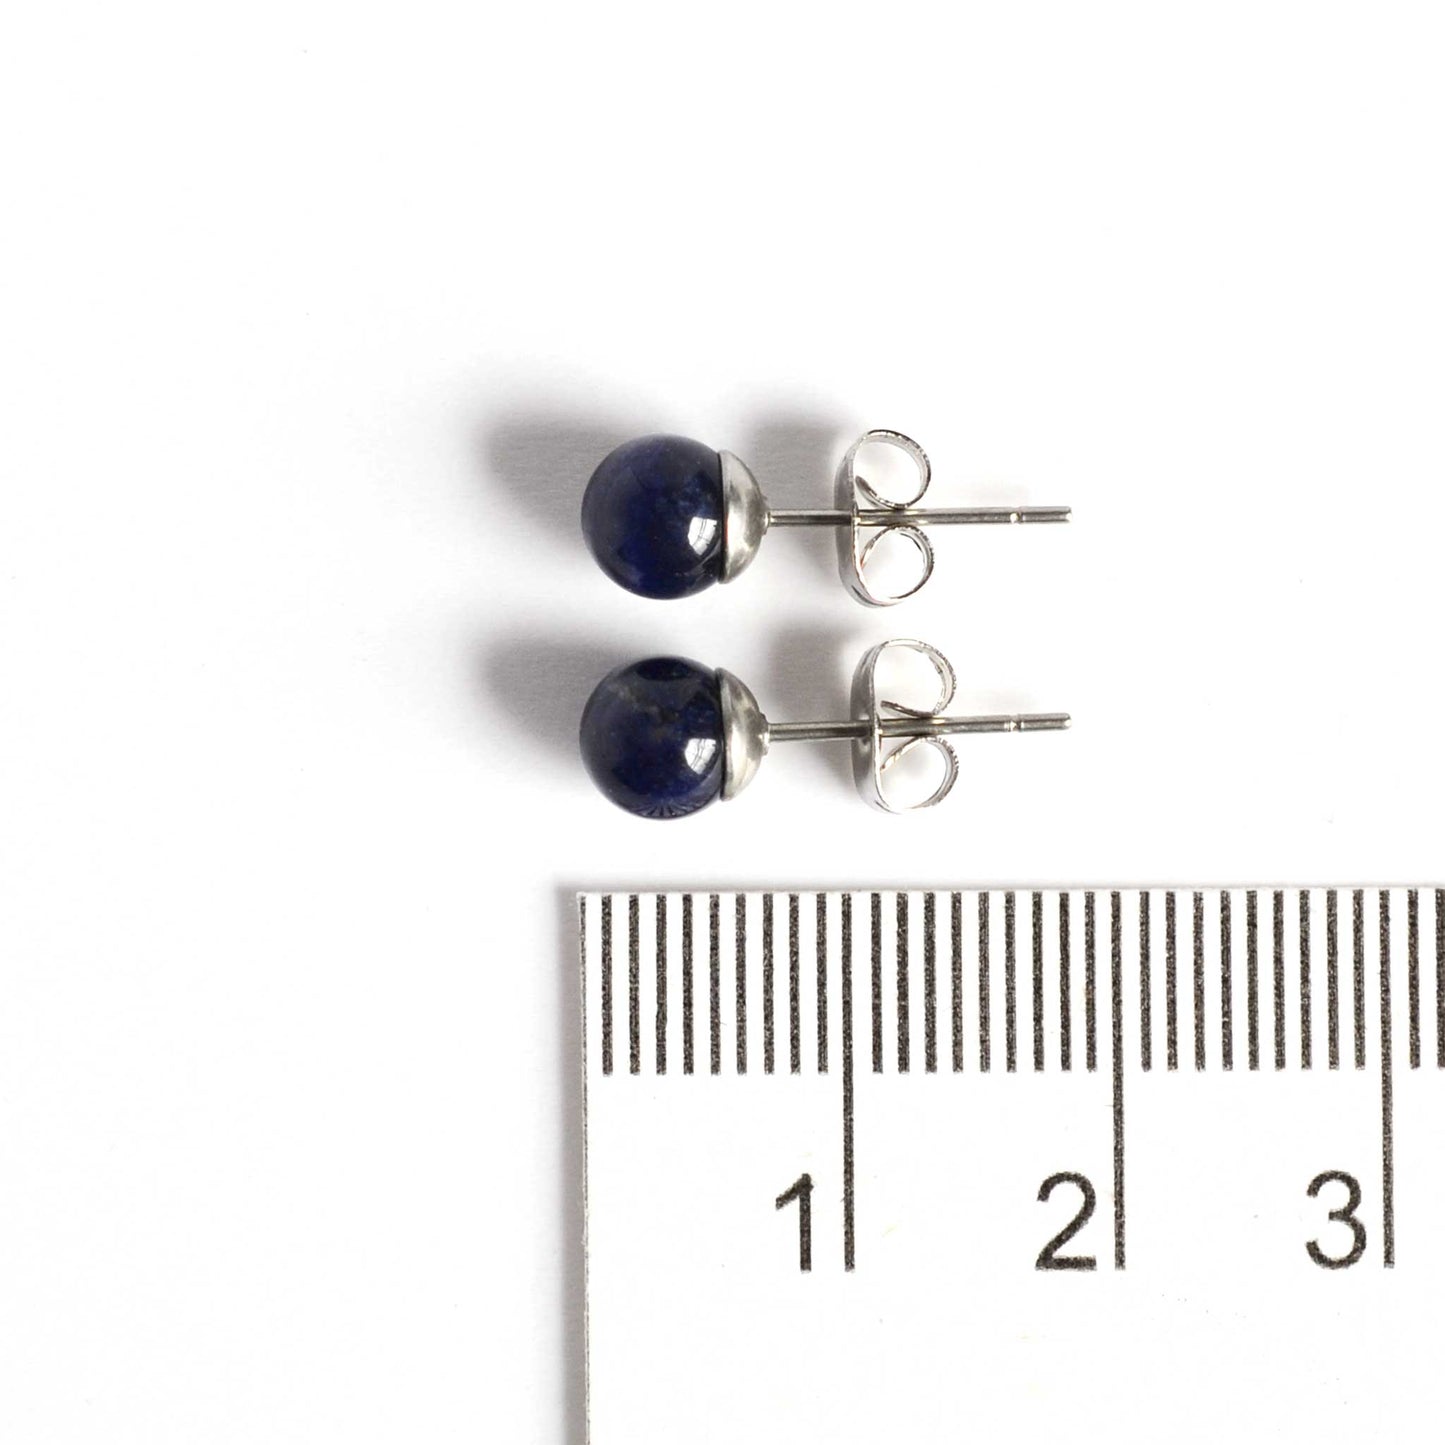 6mm Sodalite ball stud earrings next to ruler